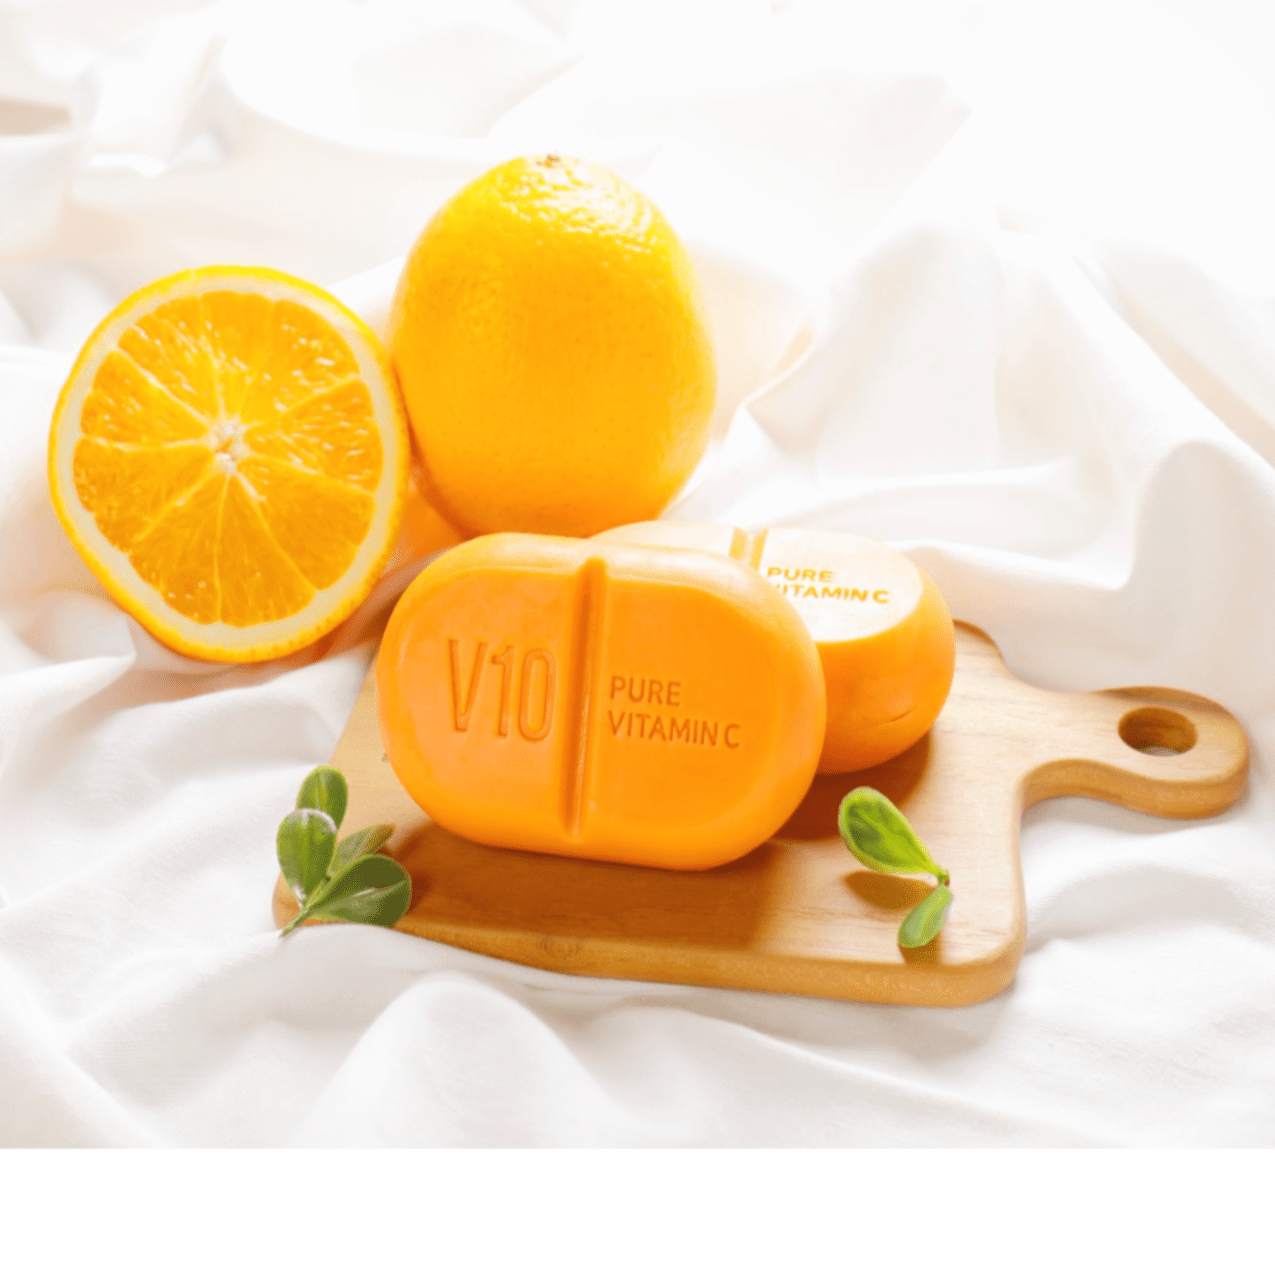 V10 Pure Vitamin C Soap | Limpiador en barra de vitamina c - Koelleza Store